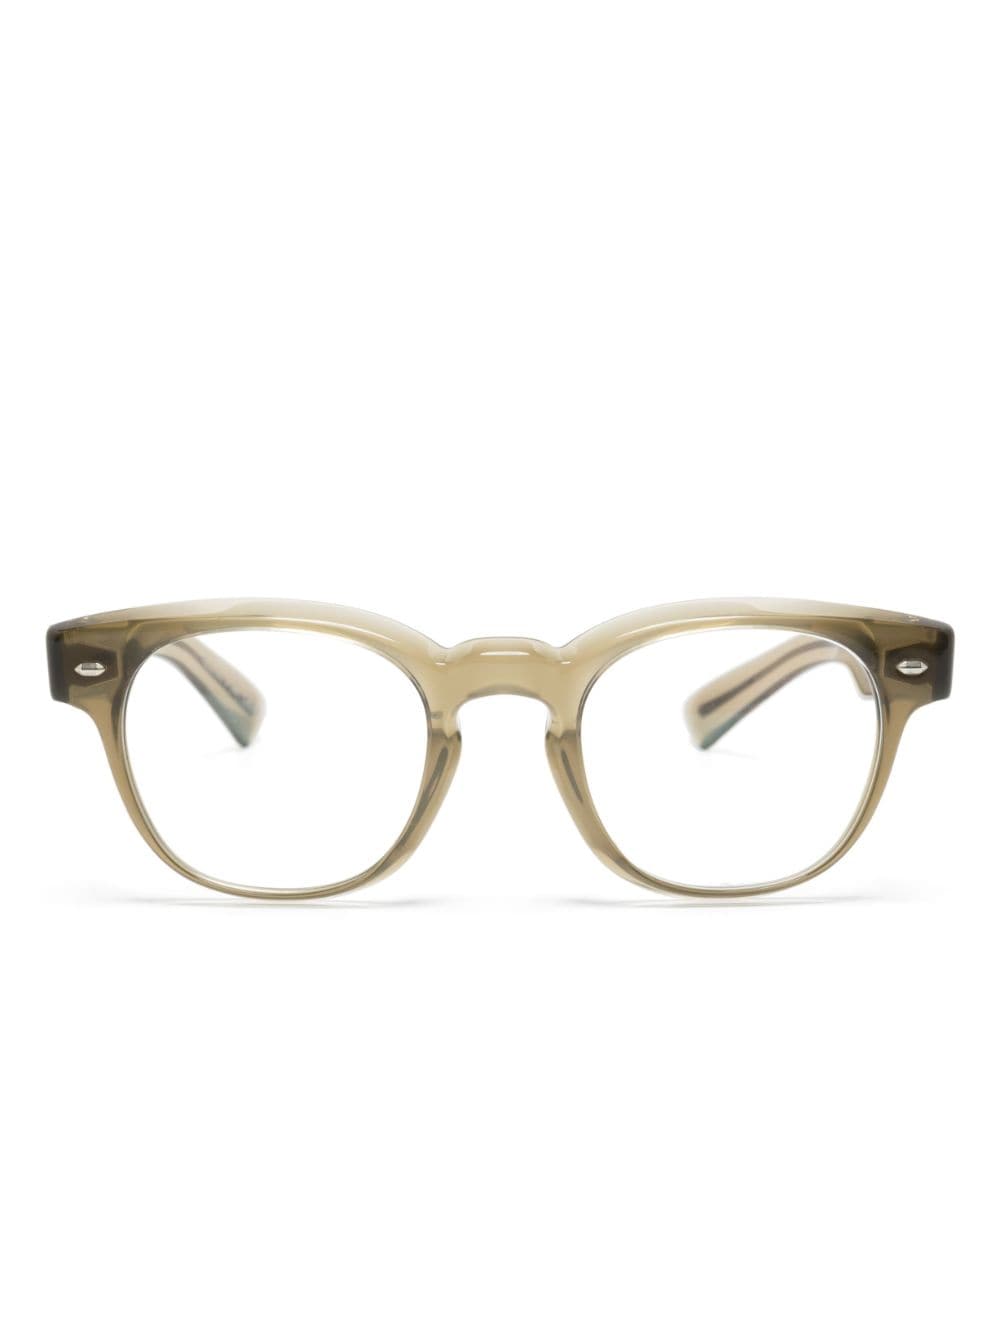 Oliver Peoples Allenby transparent-frame glasses - Neutrals von Oliver Peoples